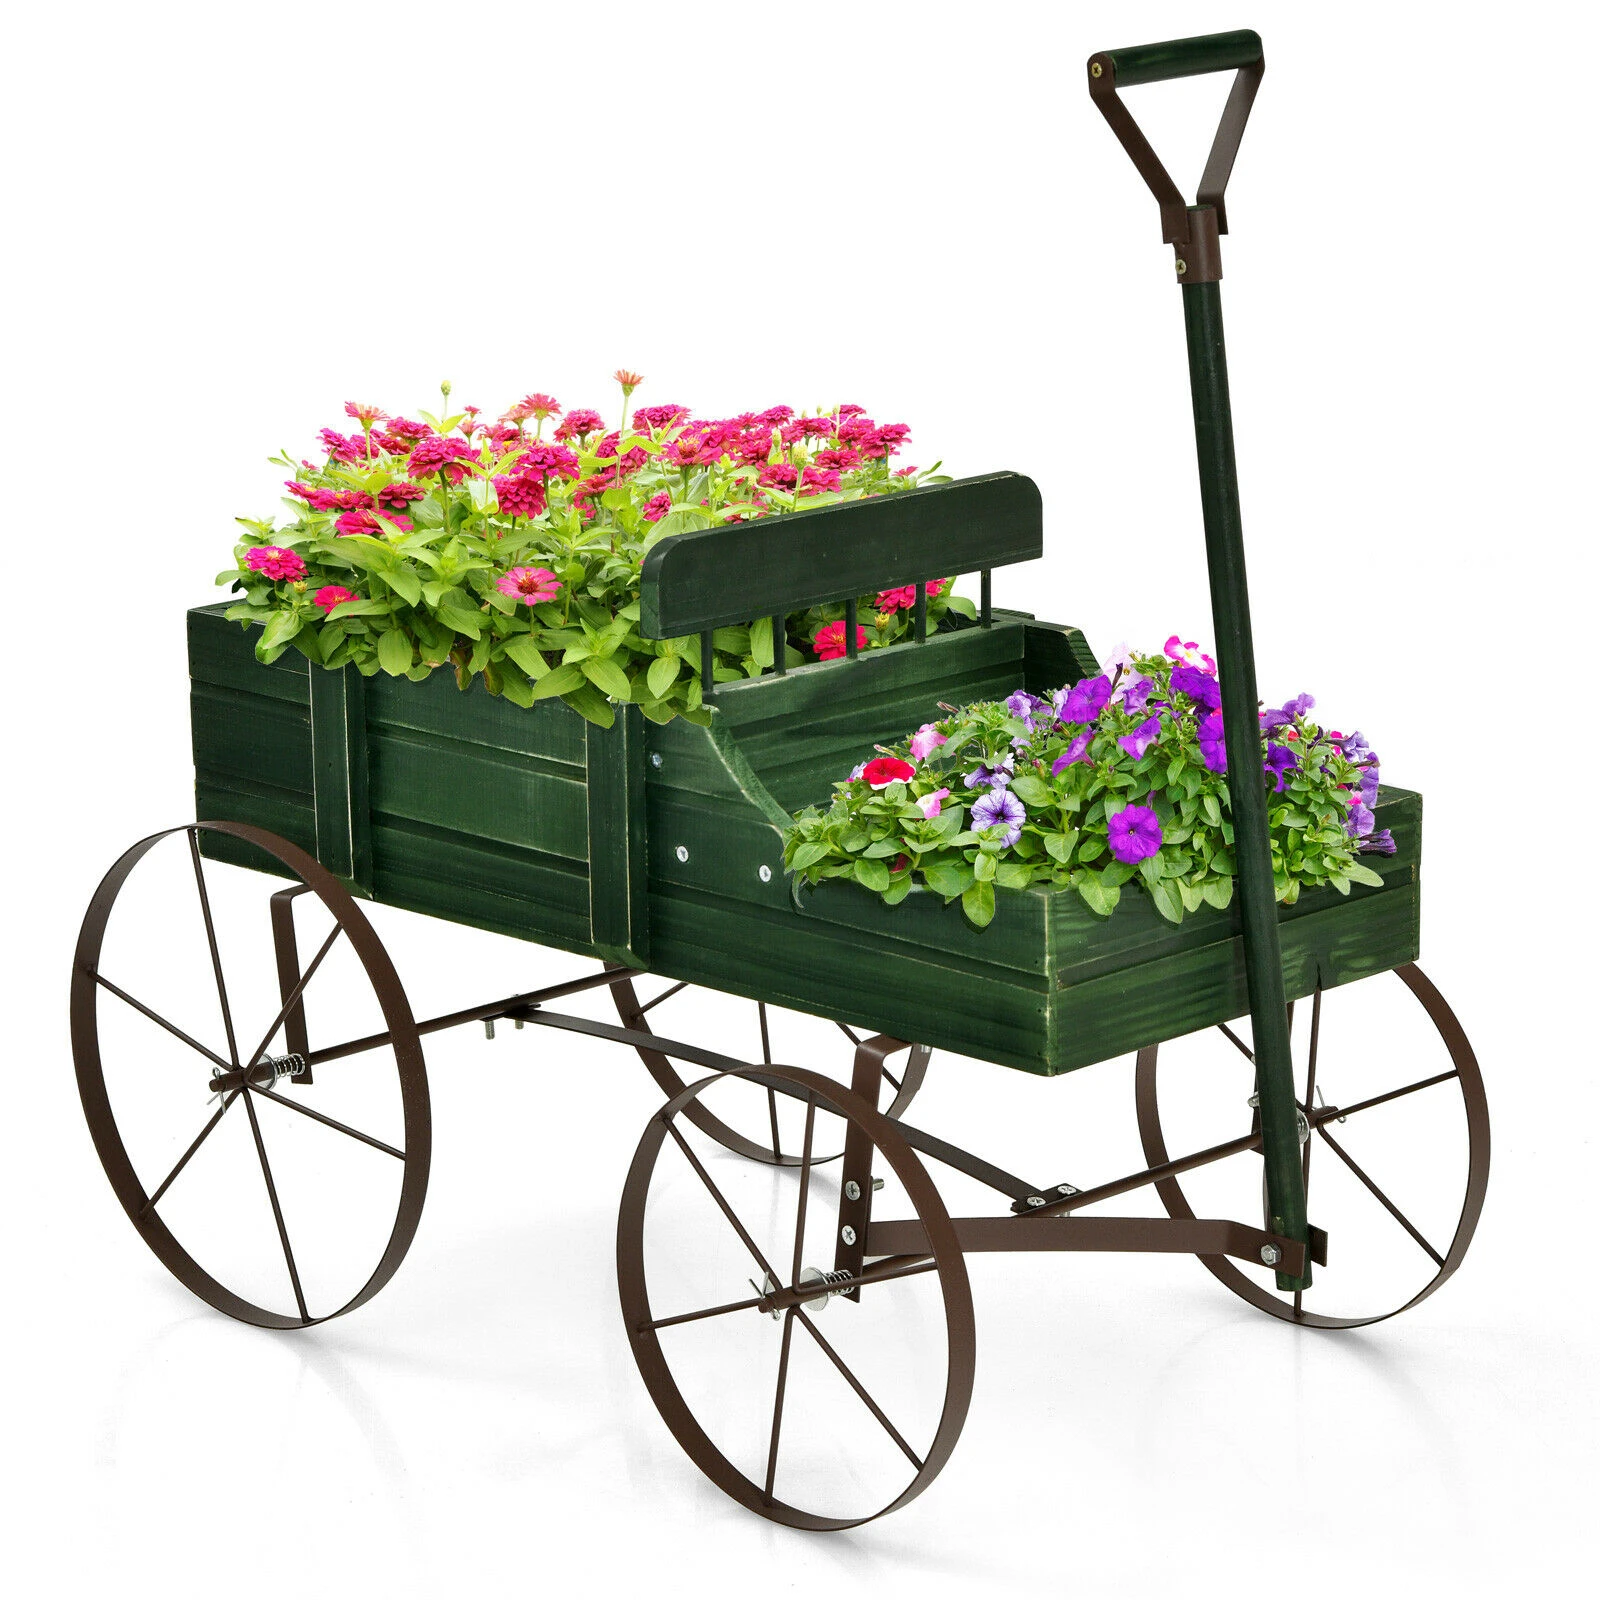 Wooden garden wagon planter